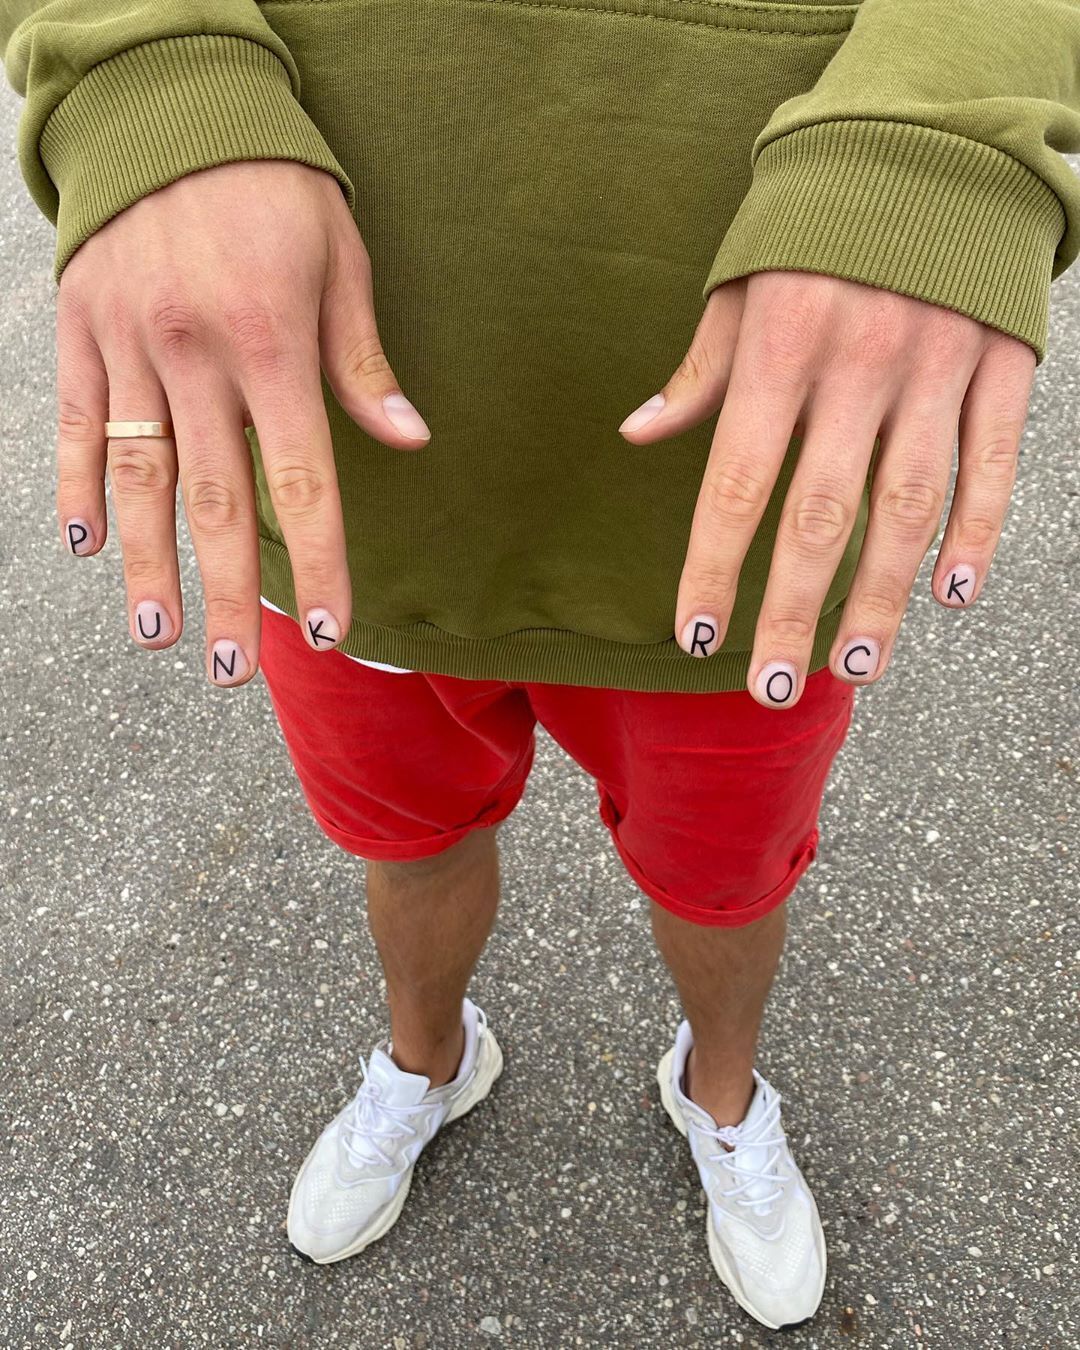 Дудь показав підписникам свої нафарбовані нігті (Instagram Юрія Дудя)